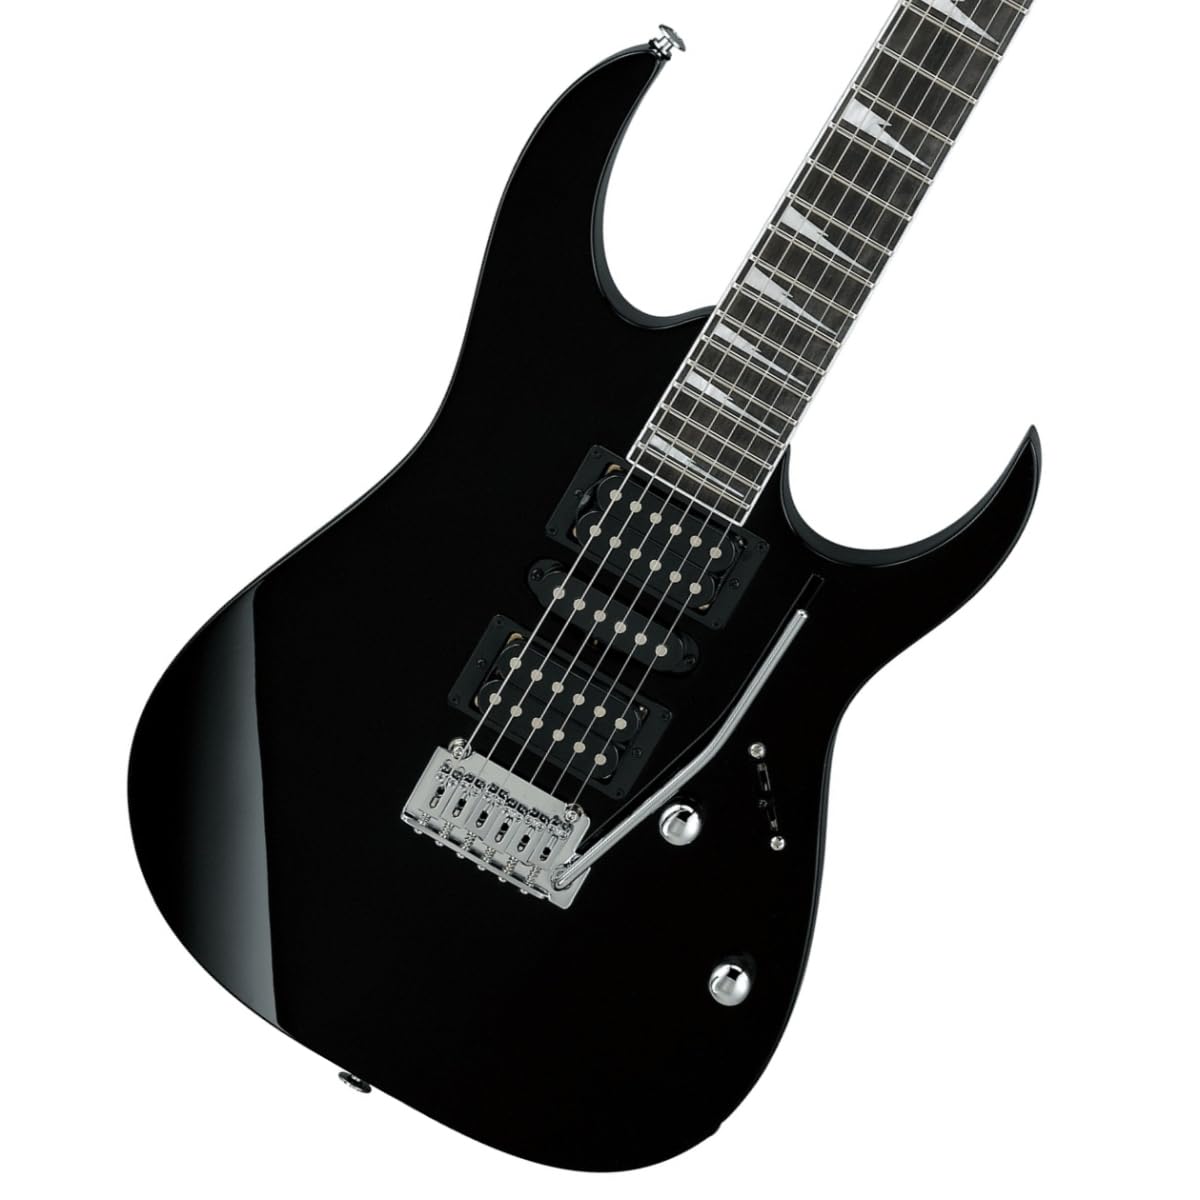 IBANEZ GIO Serie Elektrische Gitarre - Preiswertes RG Modell geeignet für Rock und Metal, in Black Night (GRG170DX-BKN)